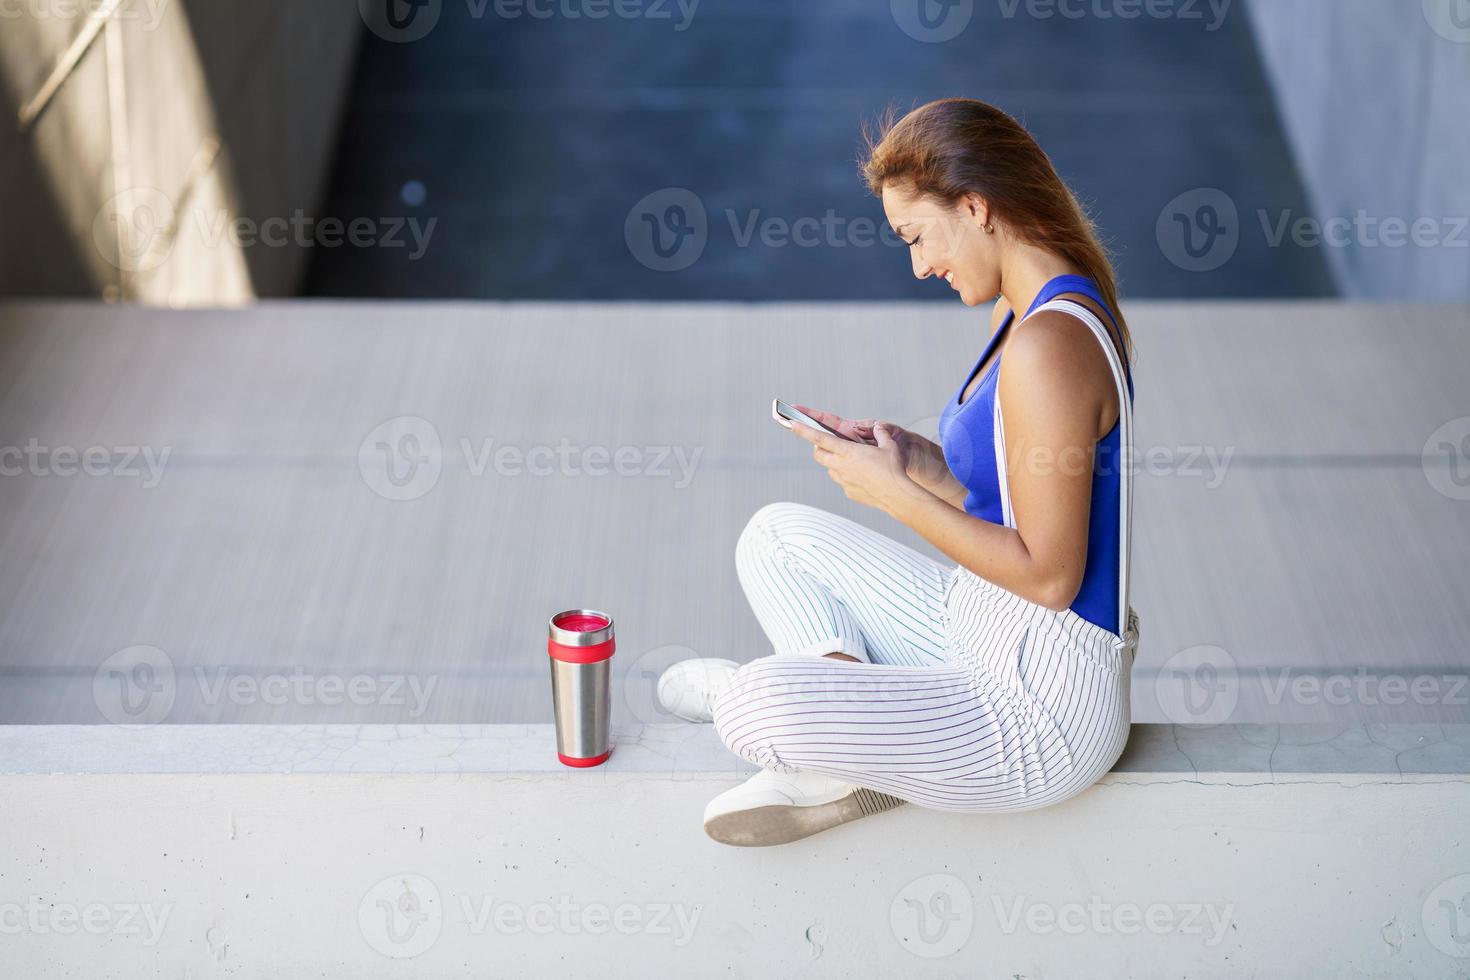 niña usando un teléfono inteligente con pantalla táctil con ropa casual foto